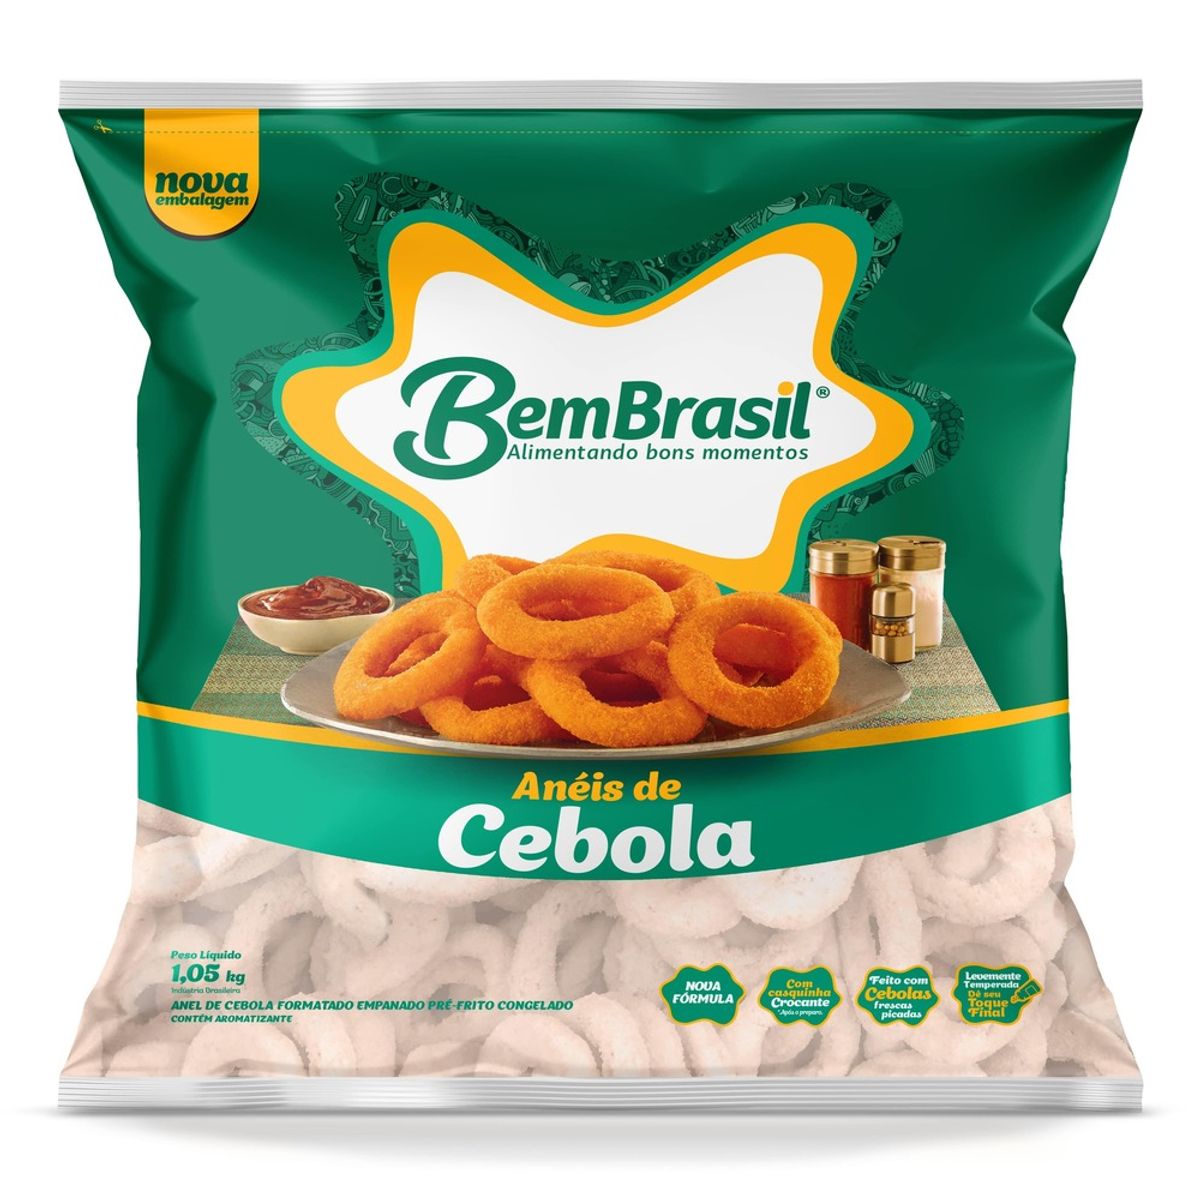 Anéis de Cebola Bem Brasil Congelada 1,05kg